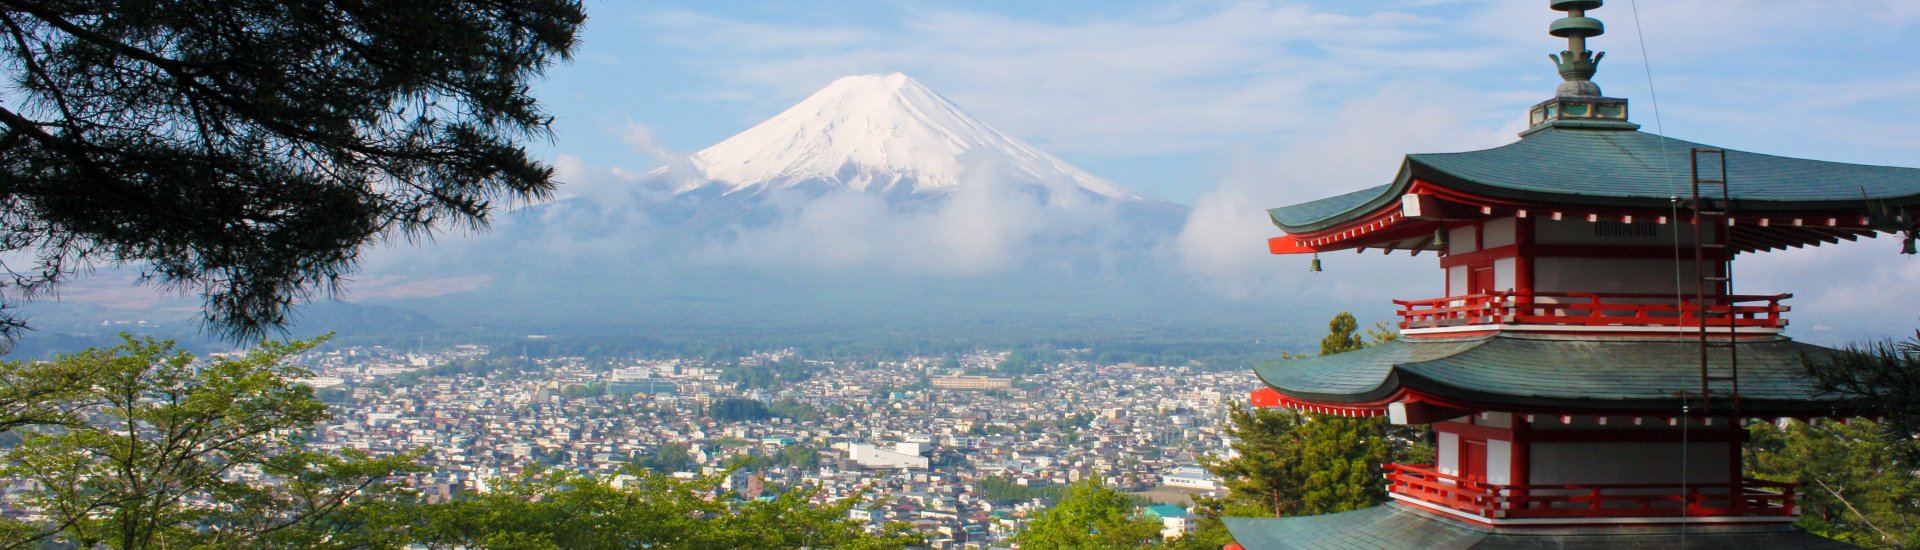 Zicht op Mount Fuji, Japan